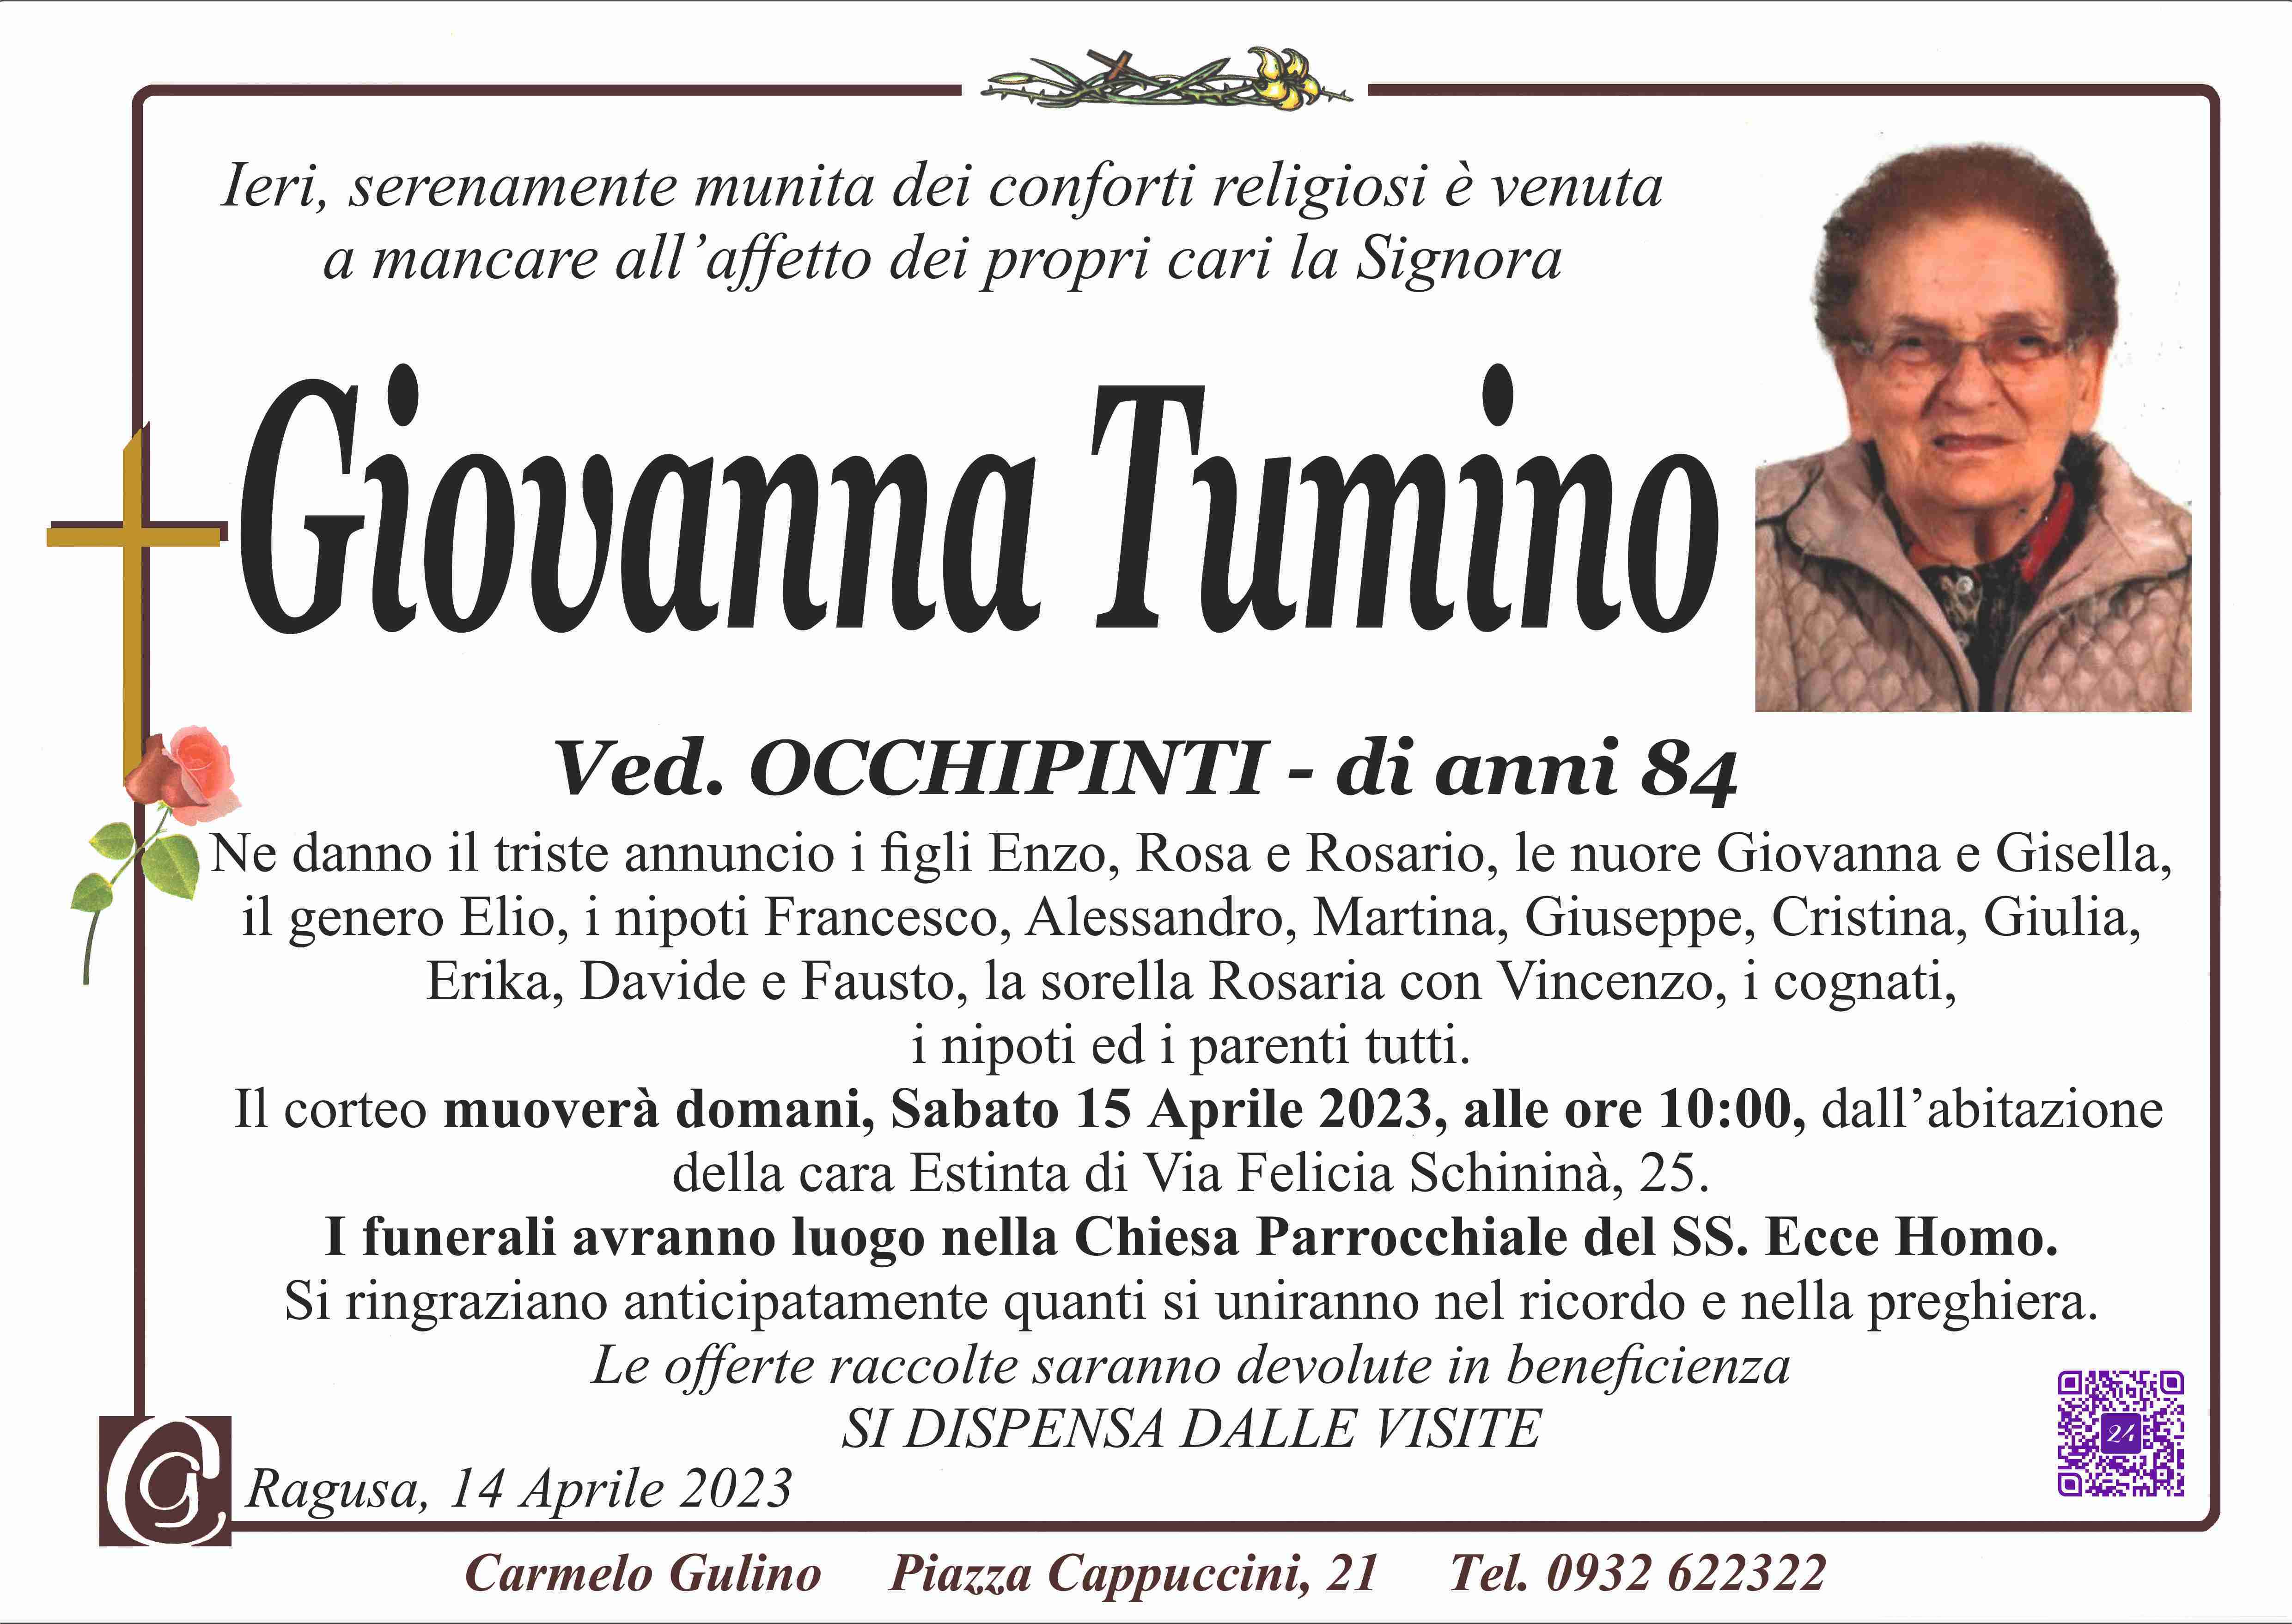 Francesca Tumino